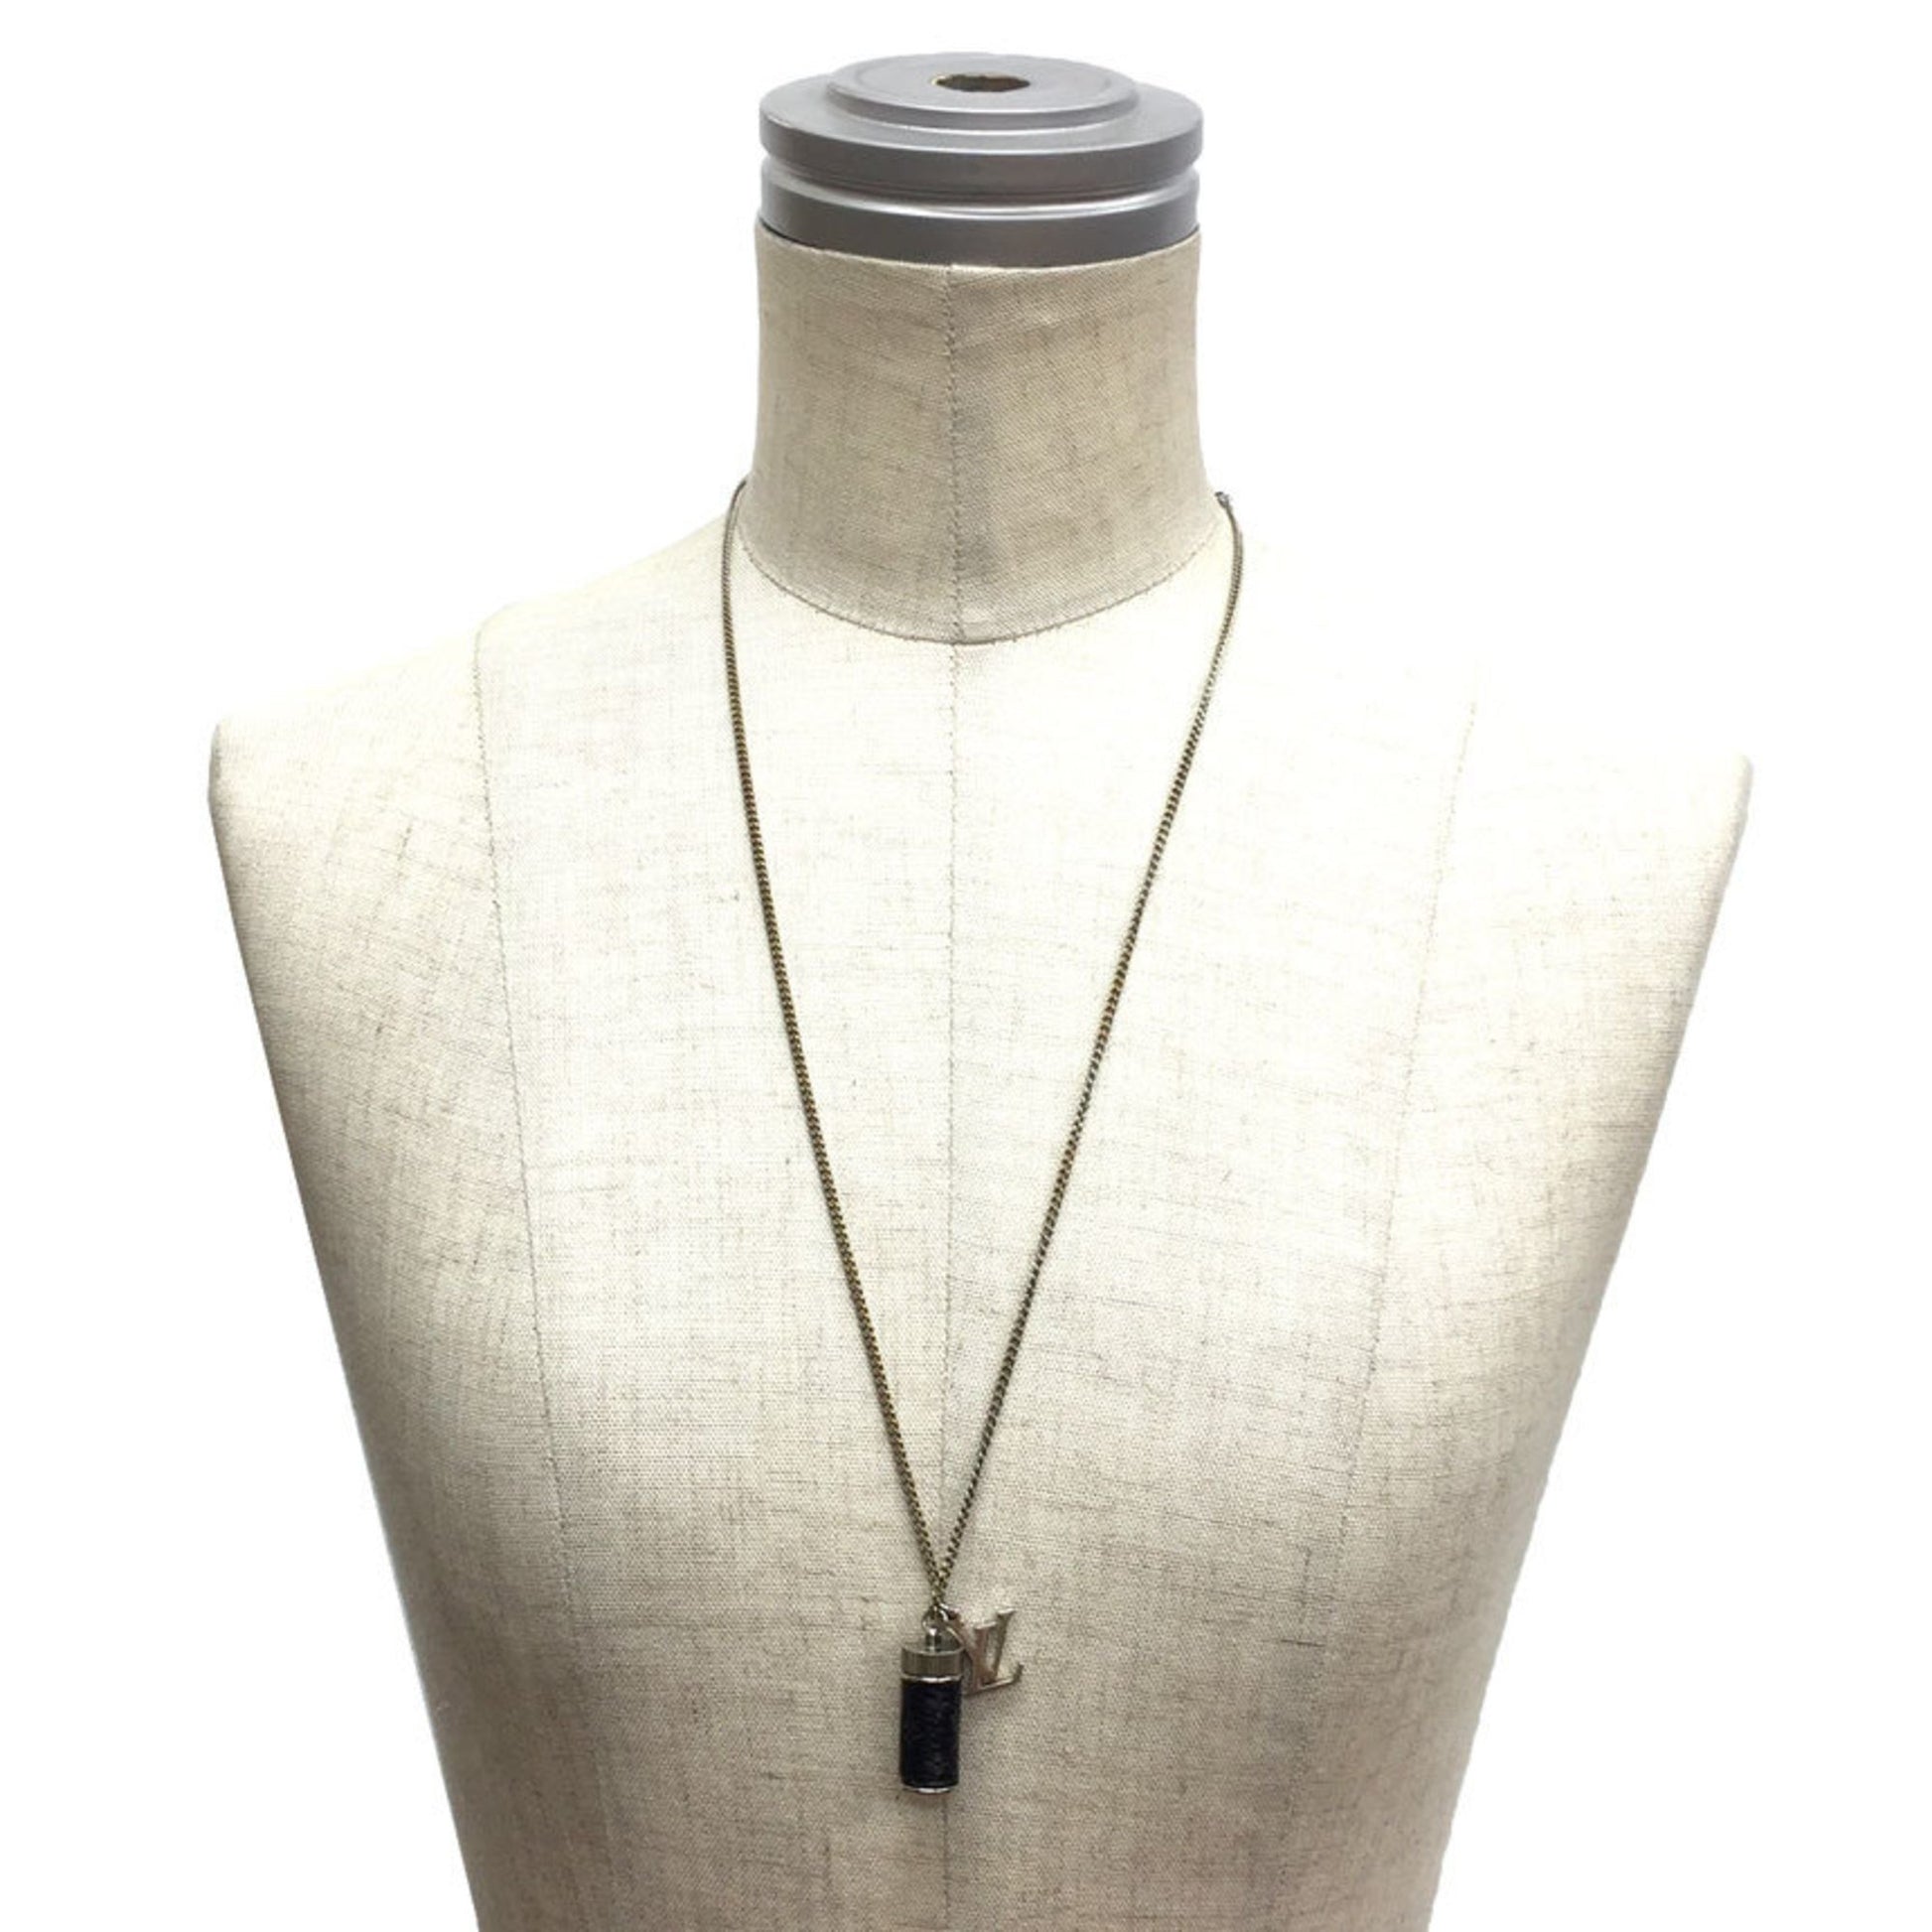 Shop Louis Vuitton Monogram eclipse charms necklace (M63641) by